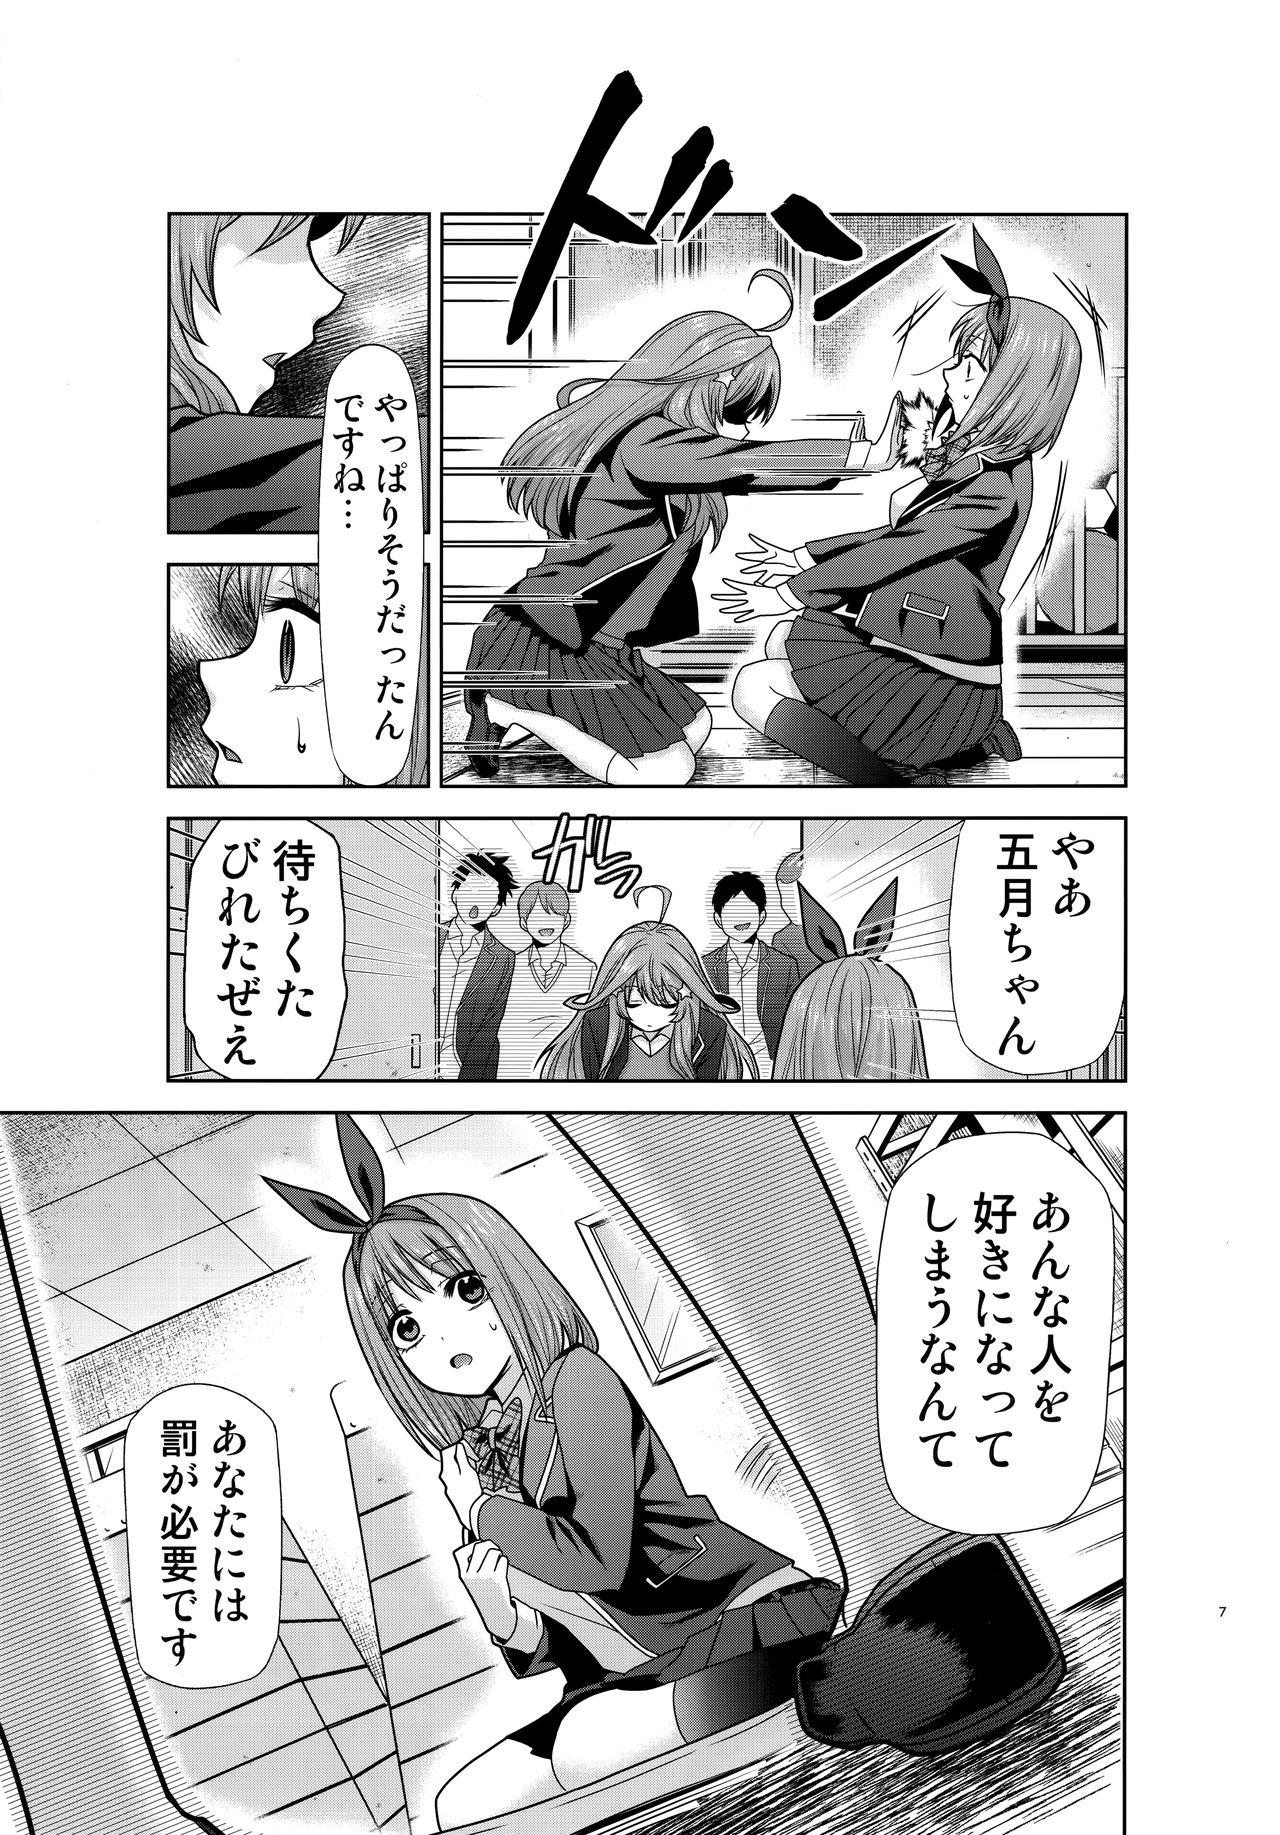 Satin Gotoubun no Seidorei Side-B - Gotoubun no hanayome Chicks - Page 6